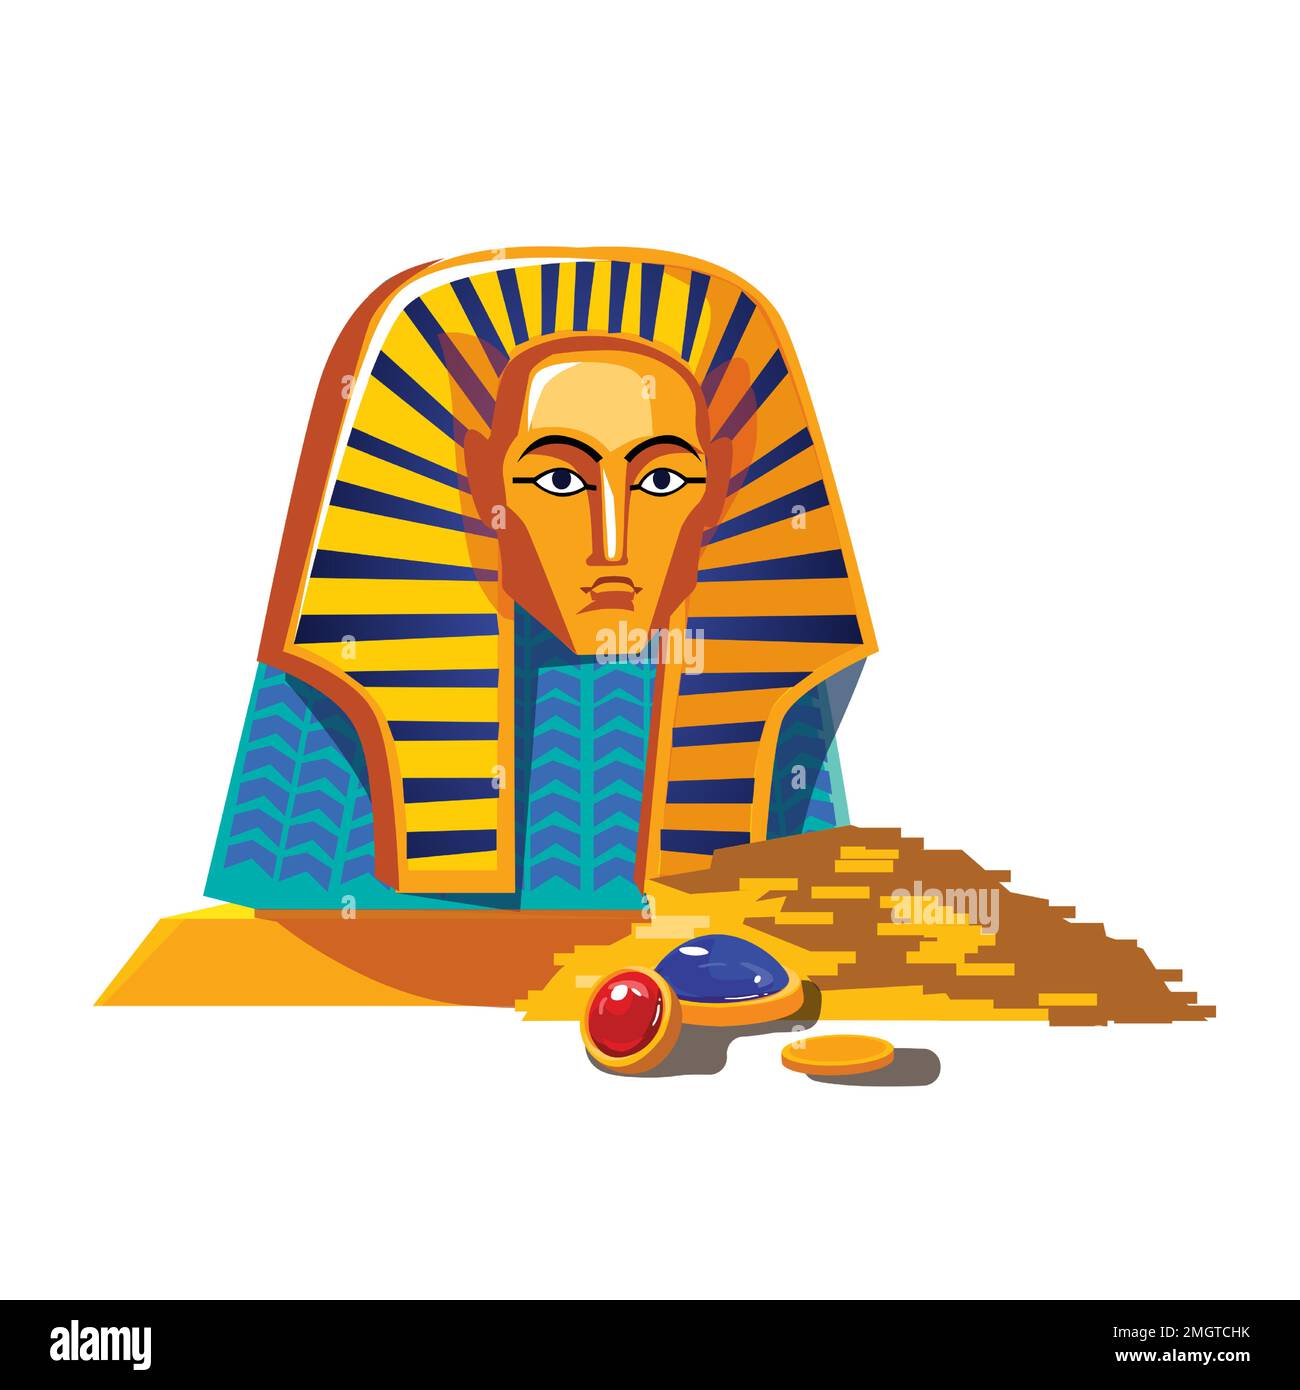 Illustrazione vettoriale del cartone animato dell'antico Egitto. Simbolo della cultura egiziana, statue dorate della testa del faraone e mucchio di monete d'oro e gemme isolate su sfondo bianco Illustrazione Vettoriale